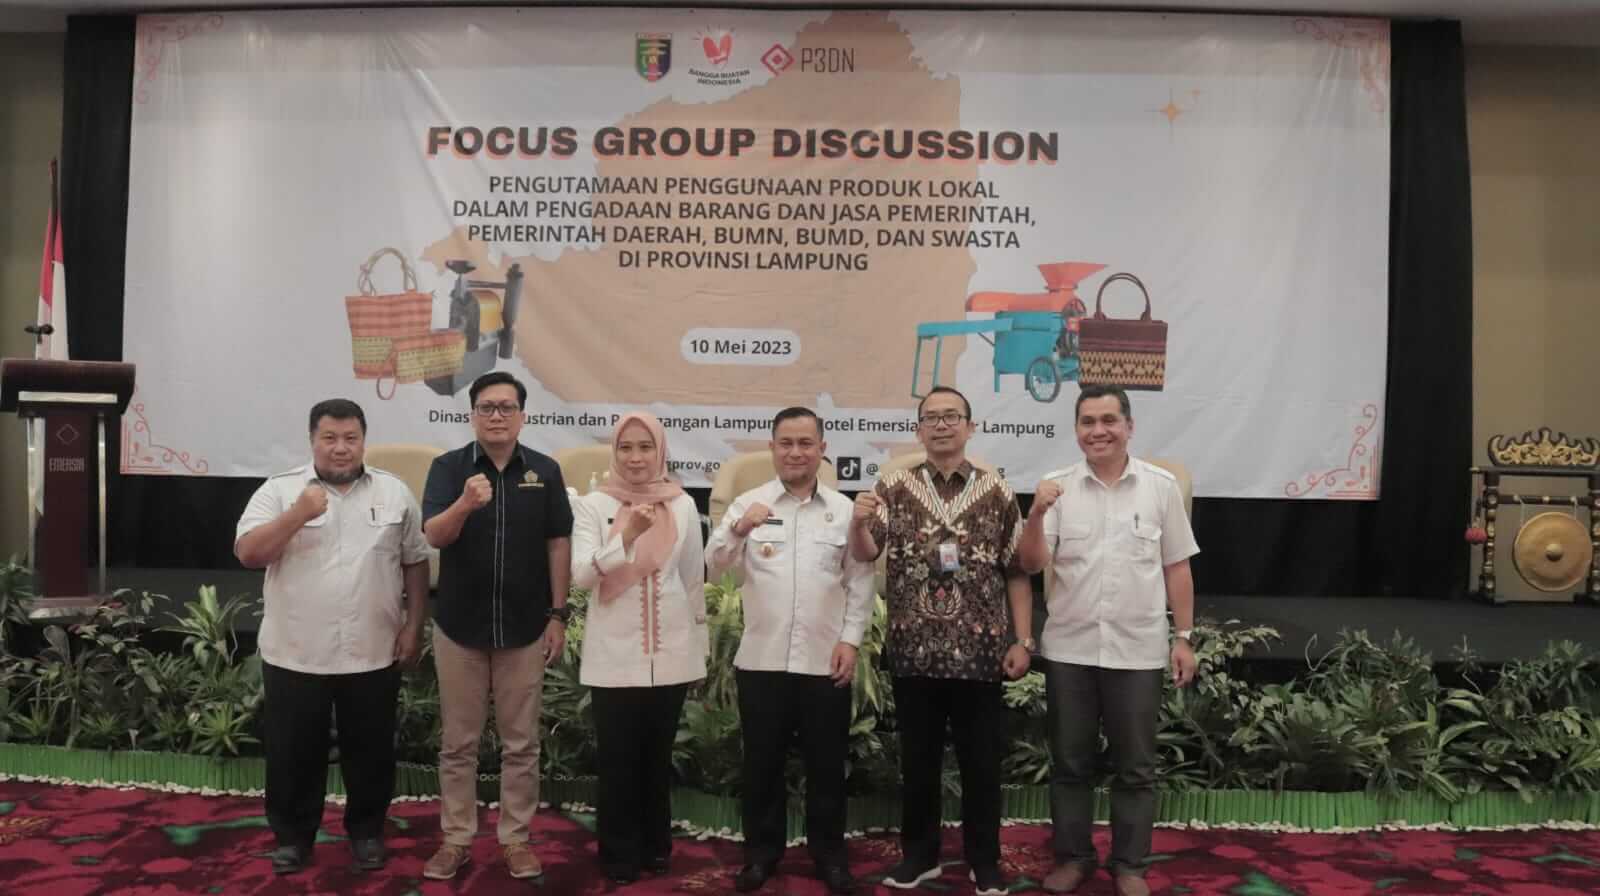 Asisten Administrasi Umum Buka FGD Pengutamaan Penggunaan Produk Lokal di Provinsi Lampung